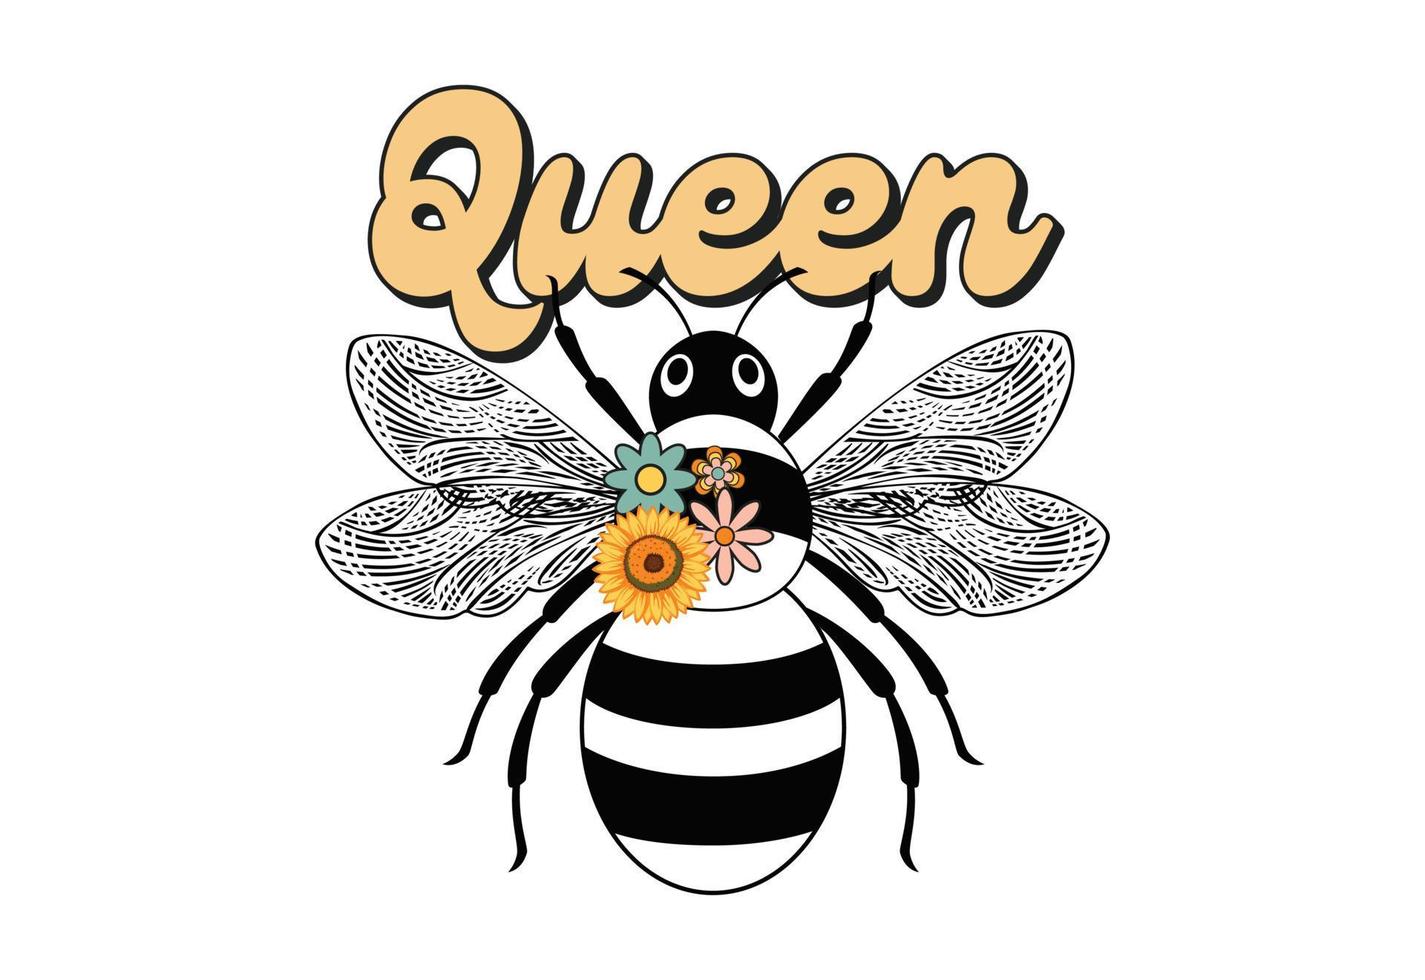 Queen, Retro Bee Quote vector